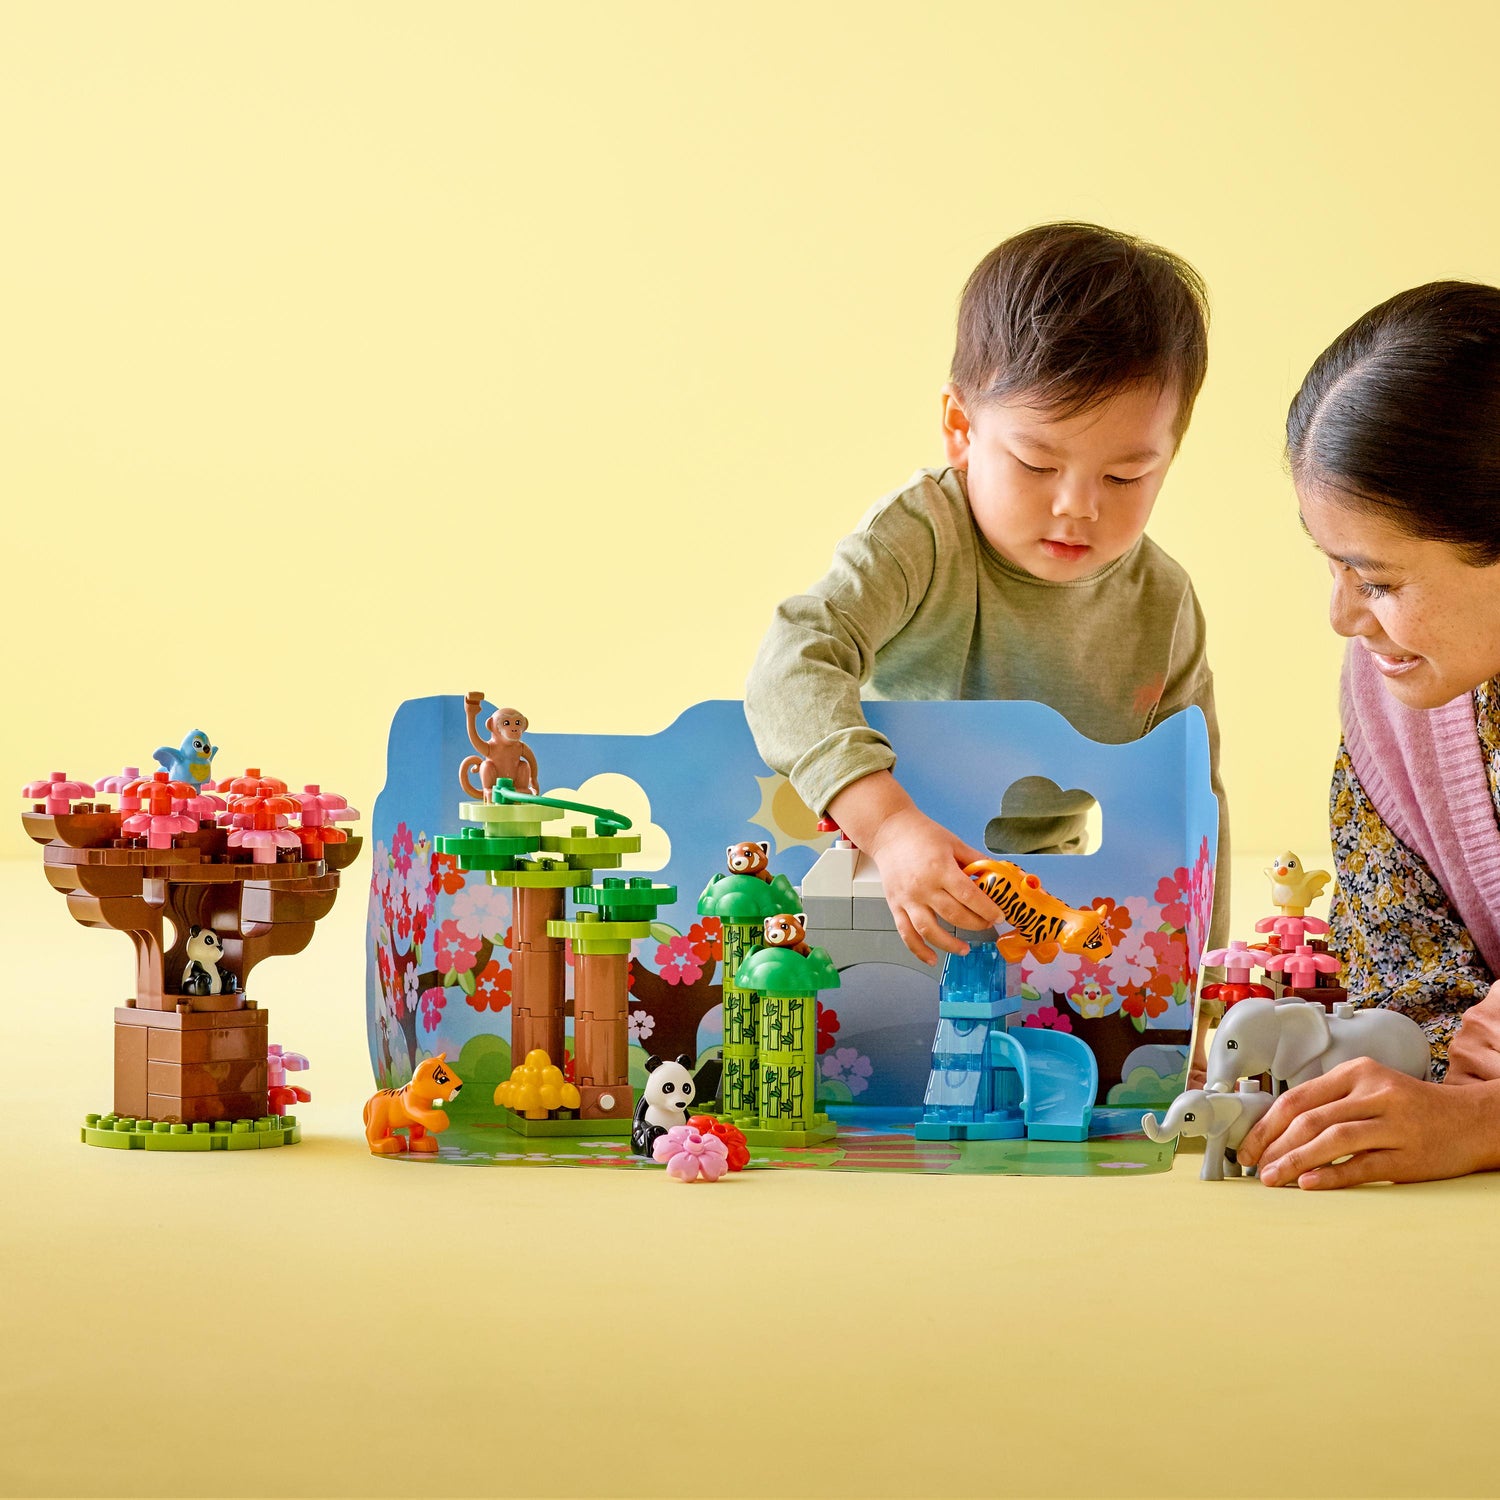 LEGO DUPLO Wild Animals of Asia Animal Toy Set